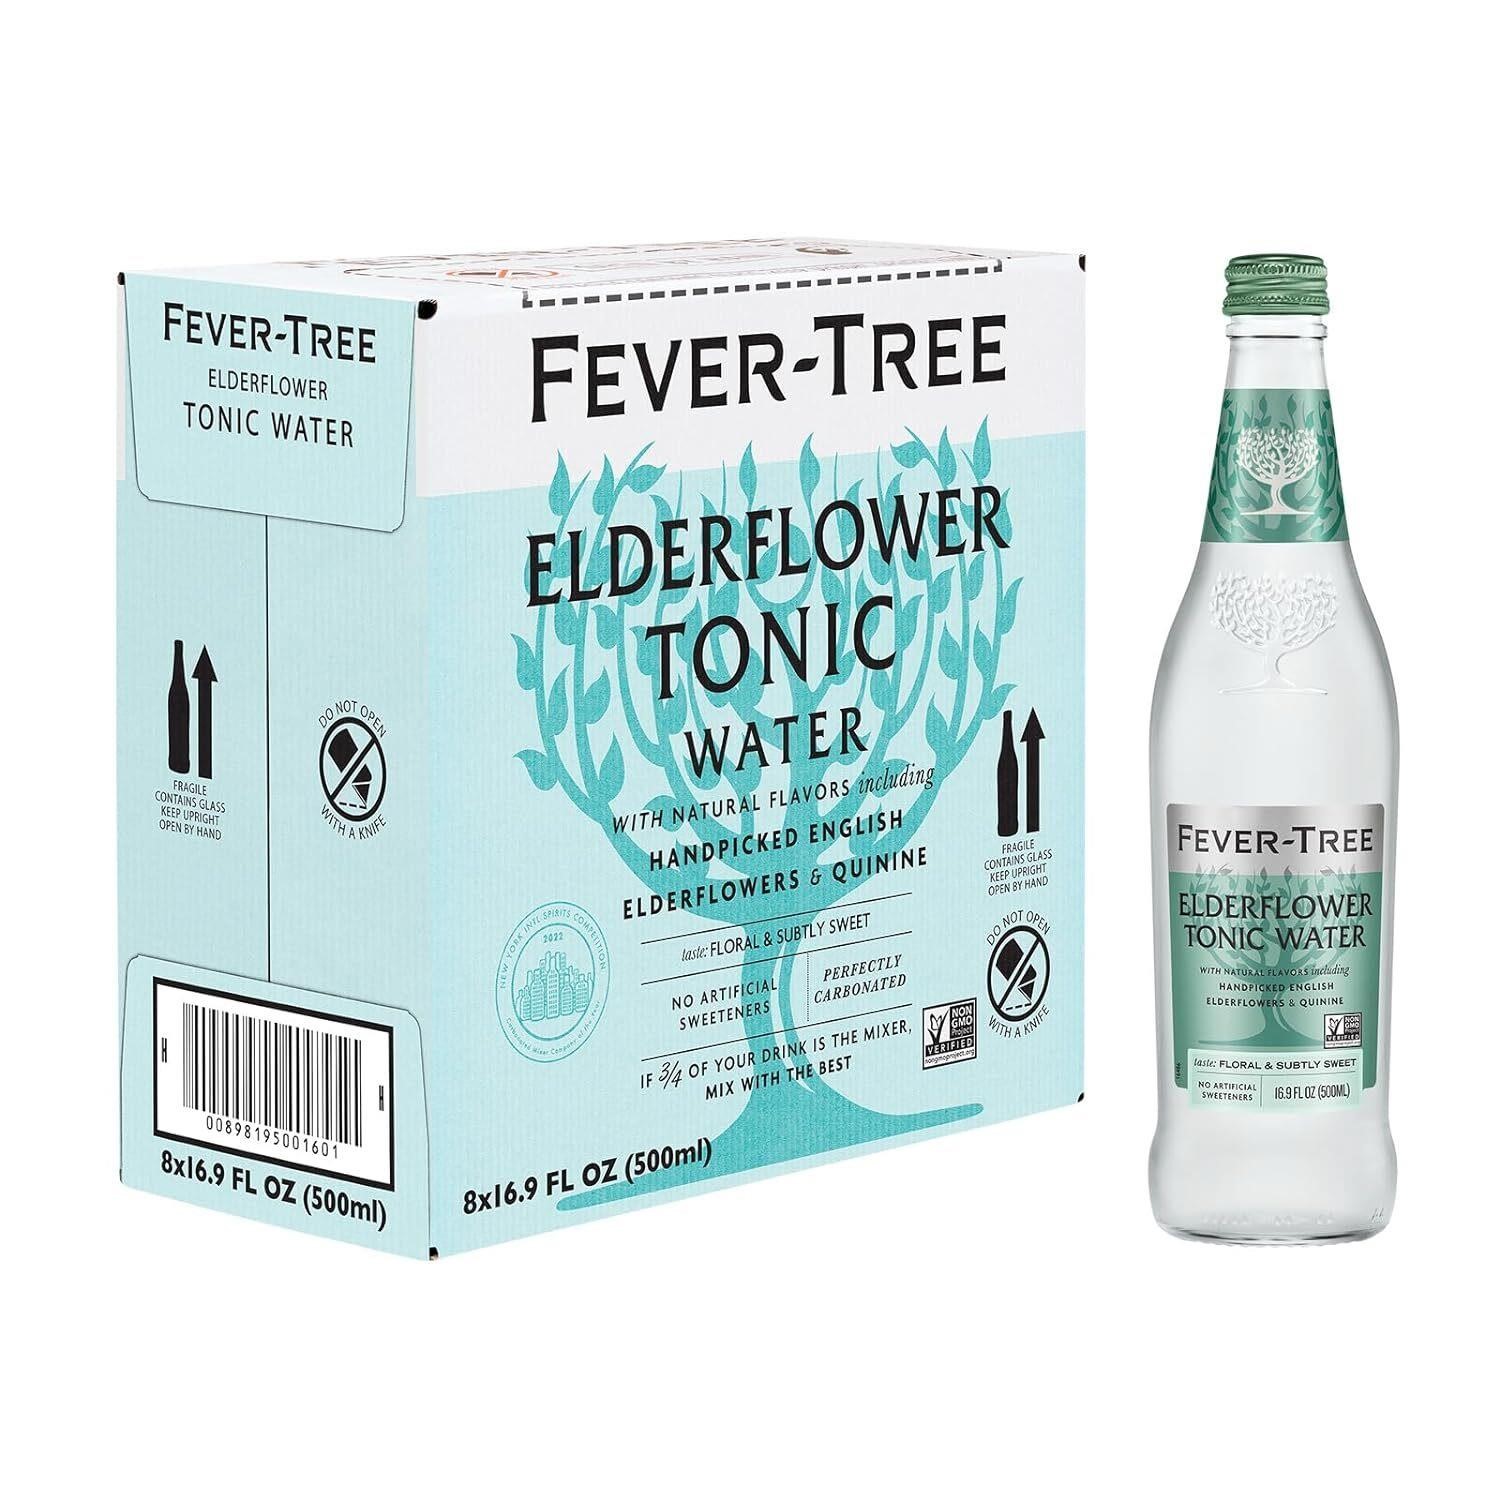 8 PACK Fever Tree Elderflower Tonic Water